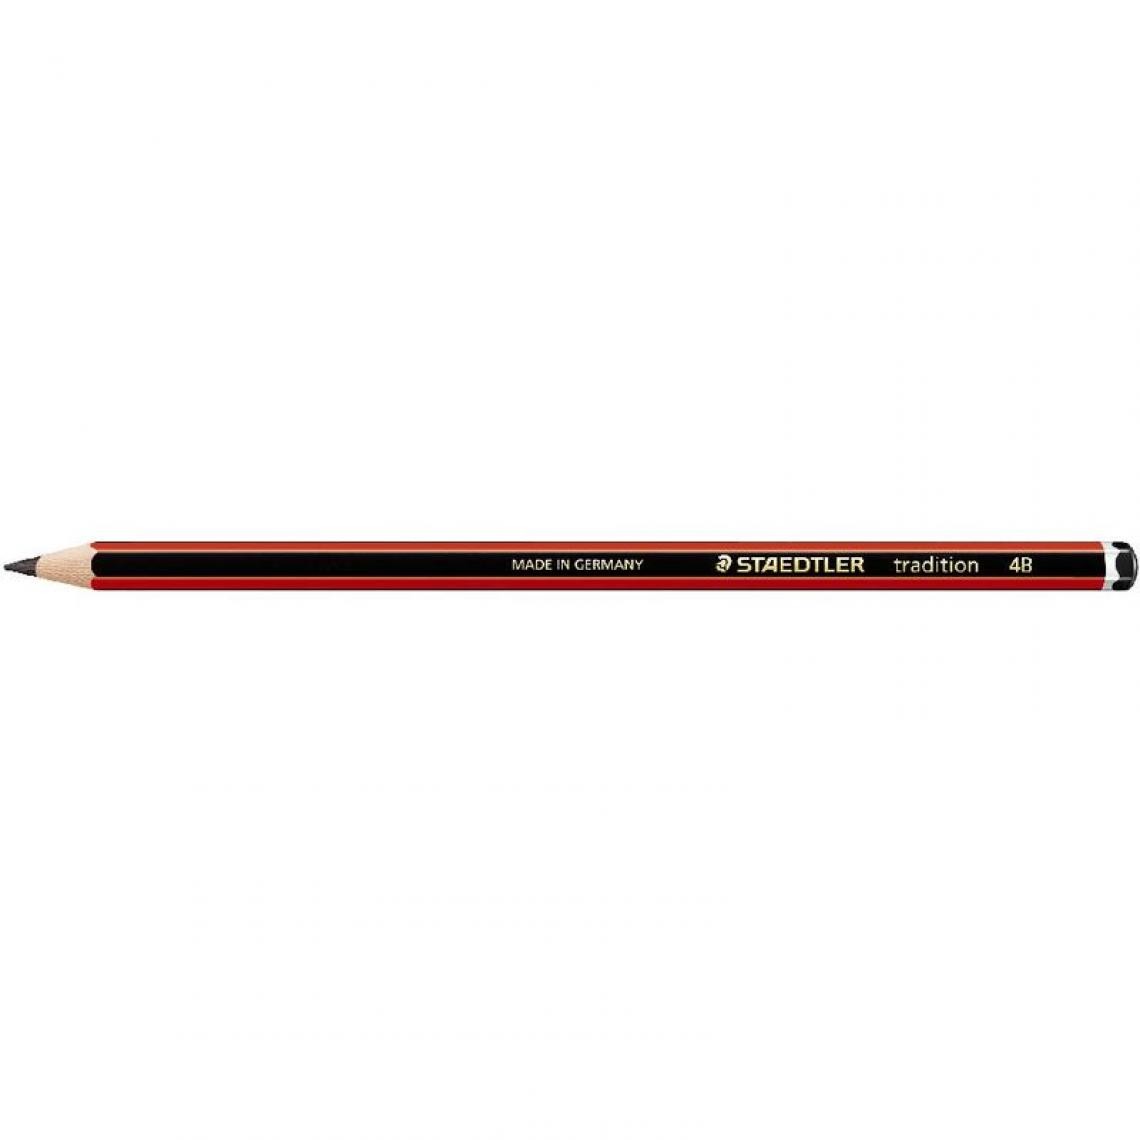 Staedtler - STAEDTLER Crayon tradition 110, degré dureté: 4B, hexagonal () - Outils et accessoires du peintre